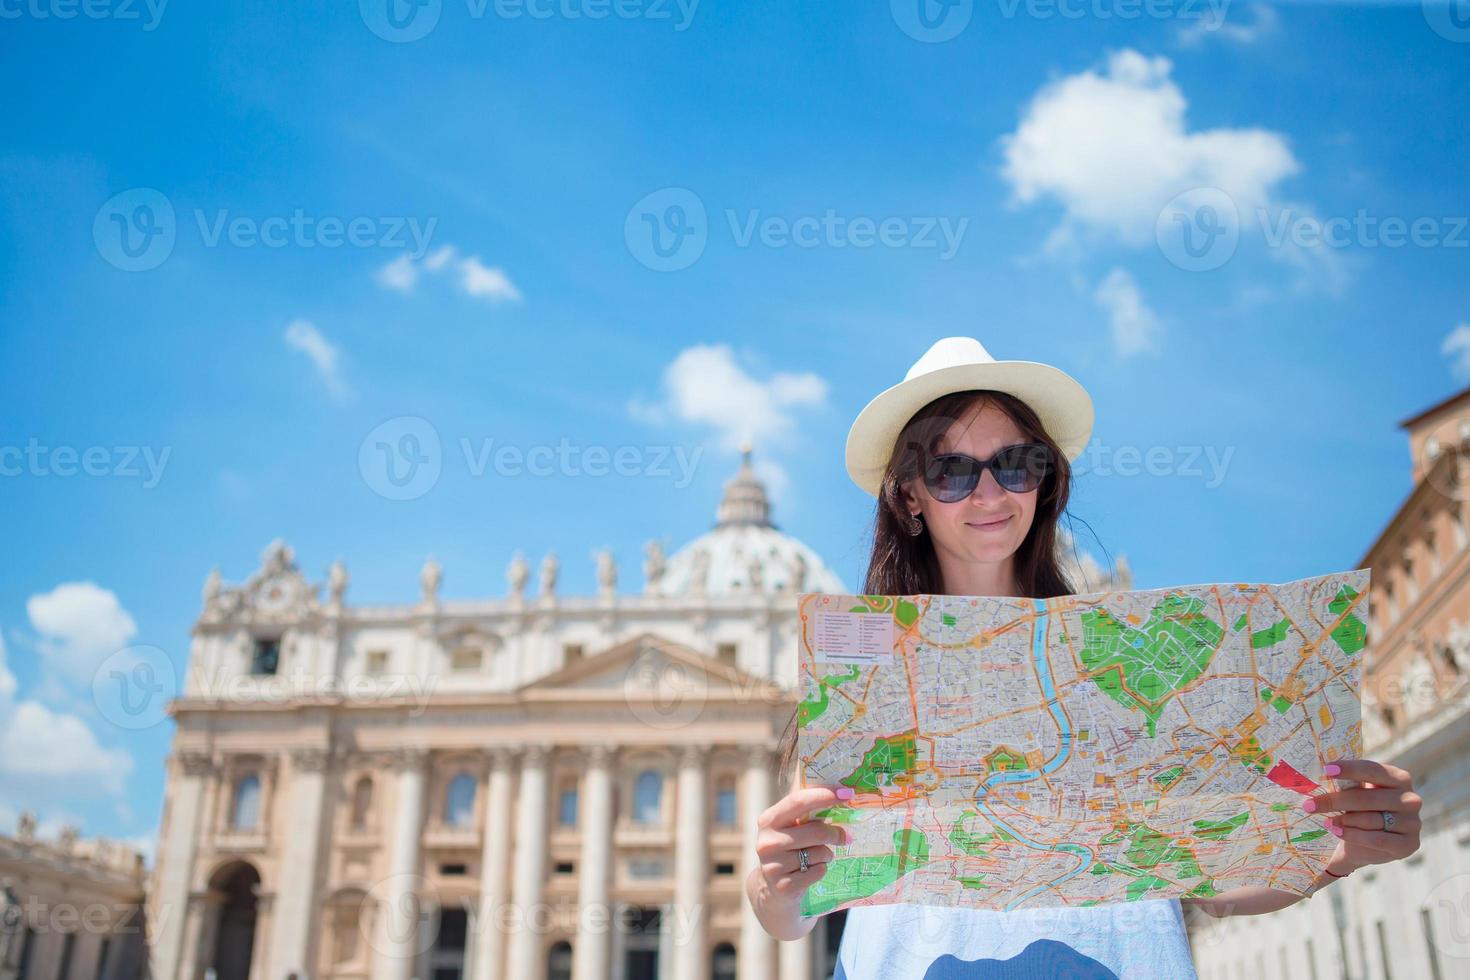 contento giovane donna con città carta geografica nel Vaticano città e st. di Pietro basilica Chiesa, Roma, Italia. viaggio turista donna con carta geografica all'aperto durante vacanze nel Europa. foto